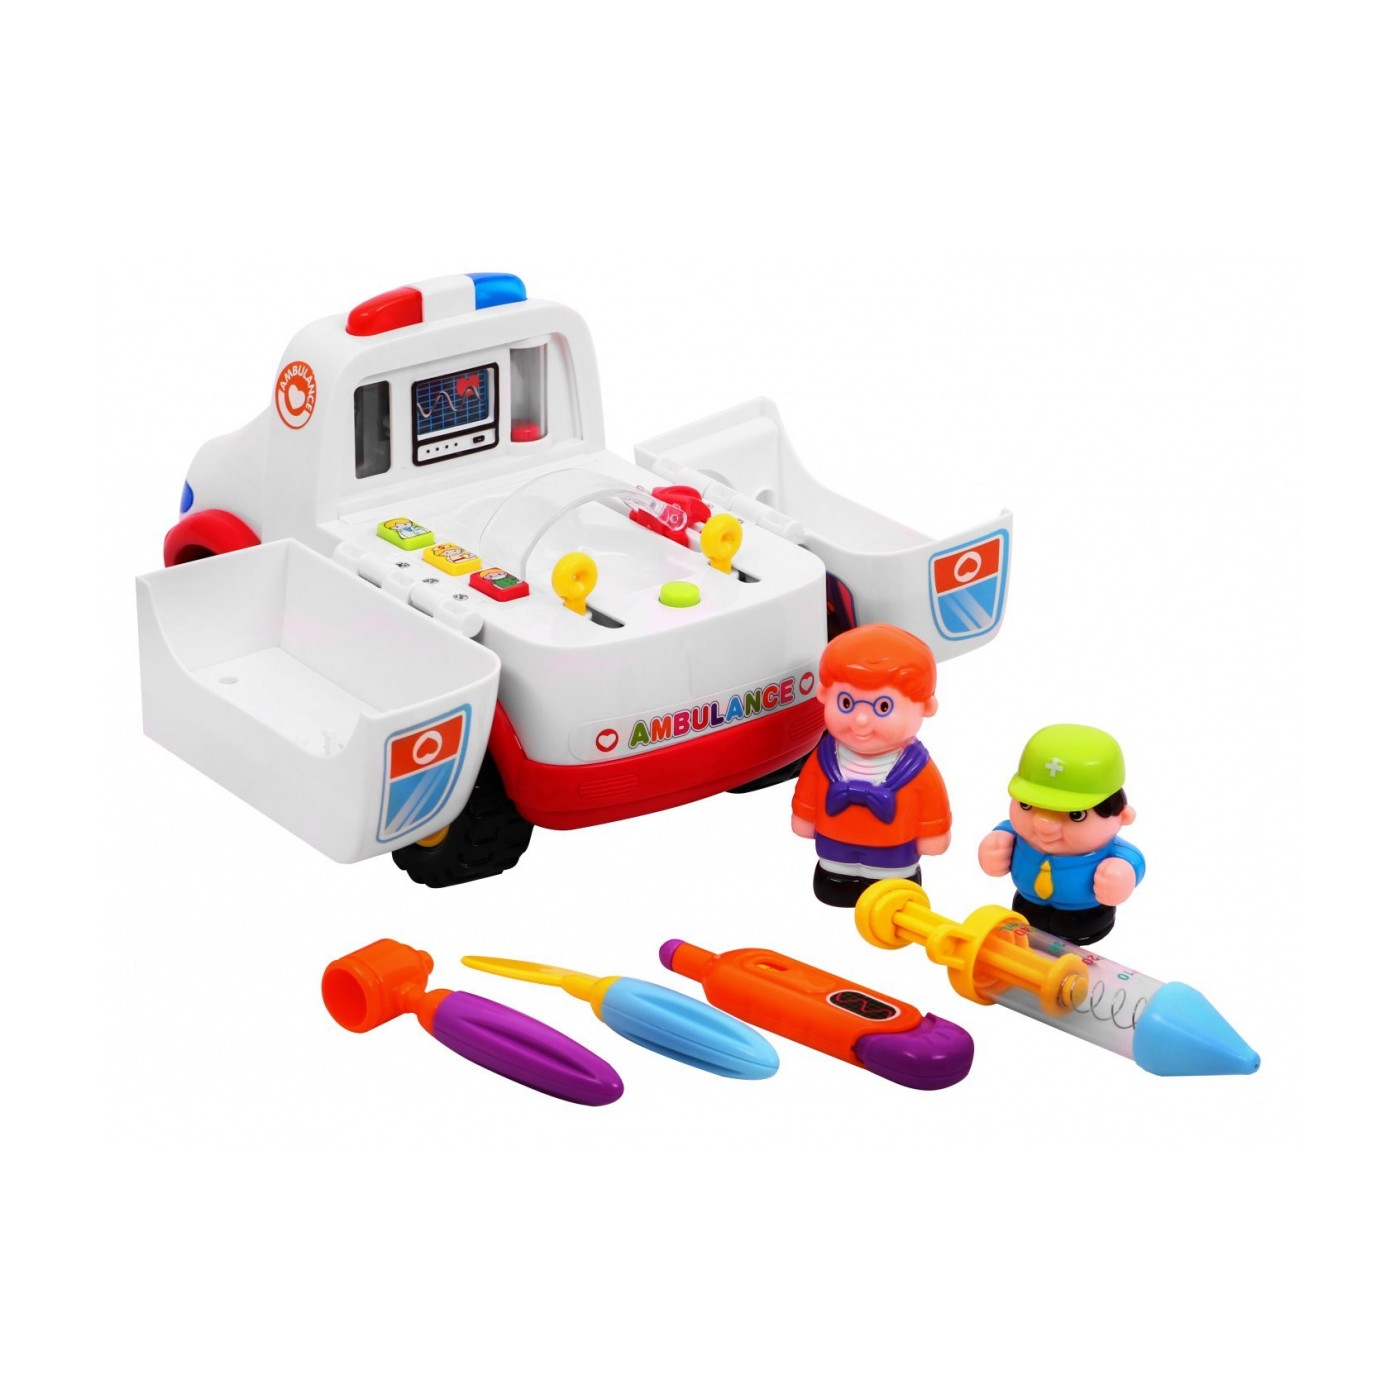 Interactive ambulance